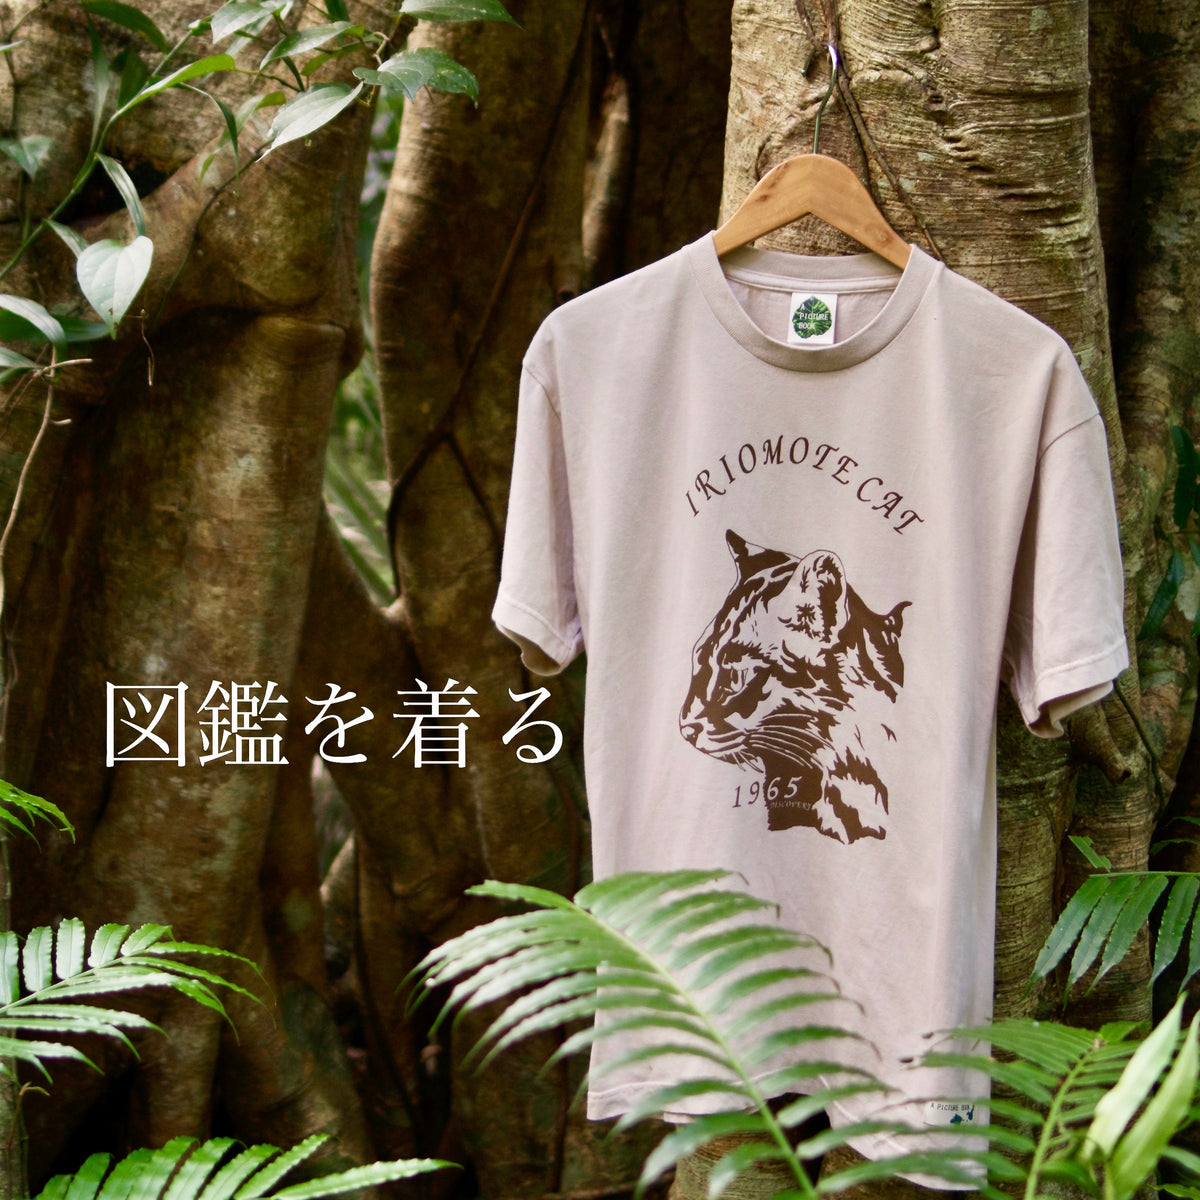 西表島の森の中で撮影されたイリオモテヤマネコのTシャツ